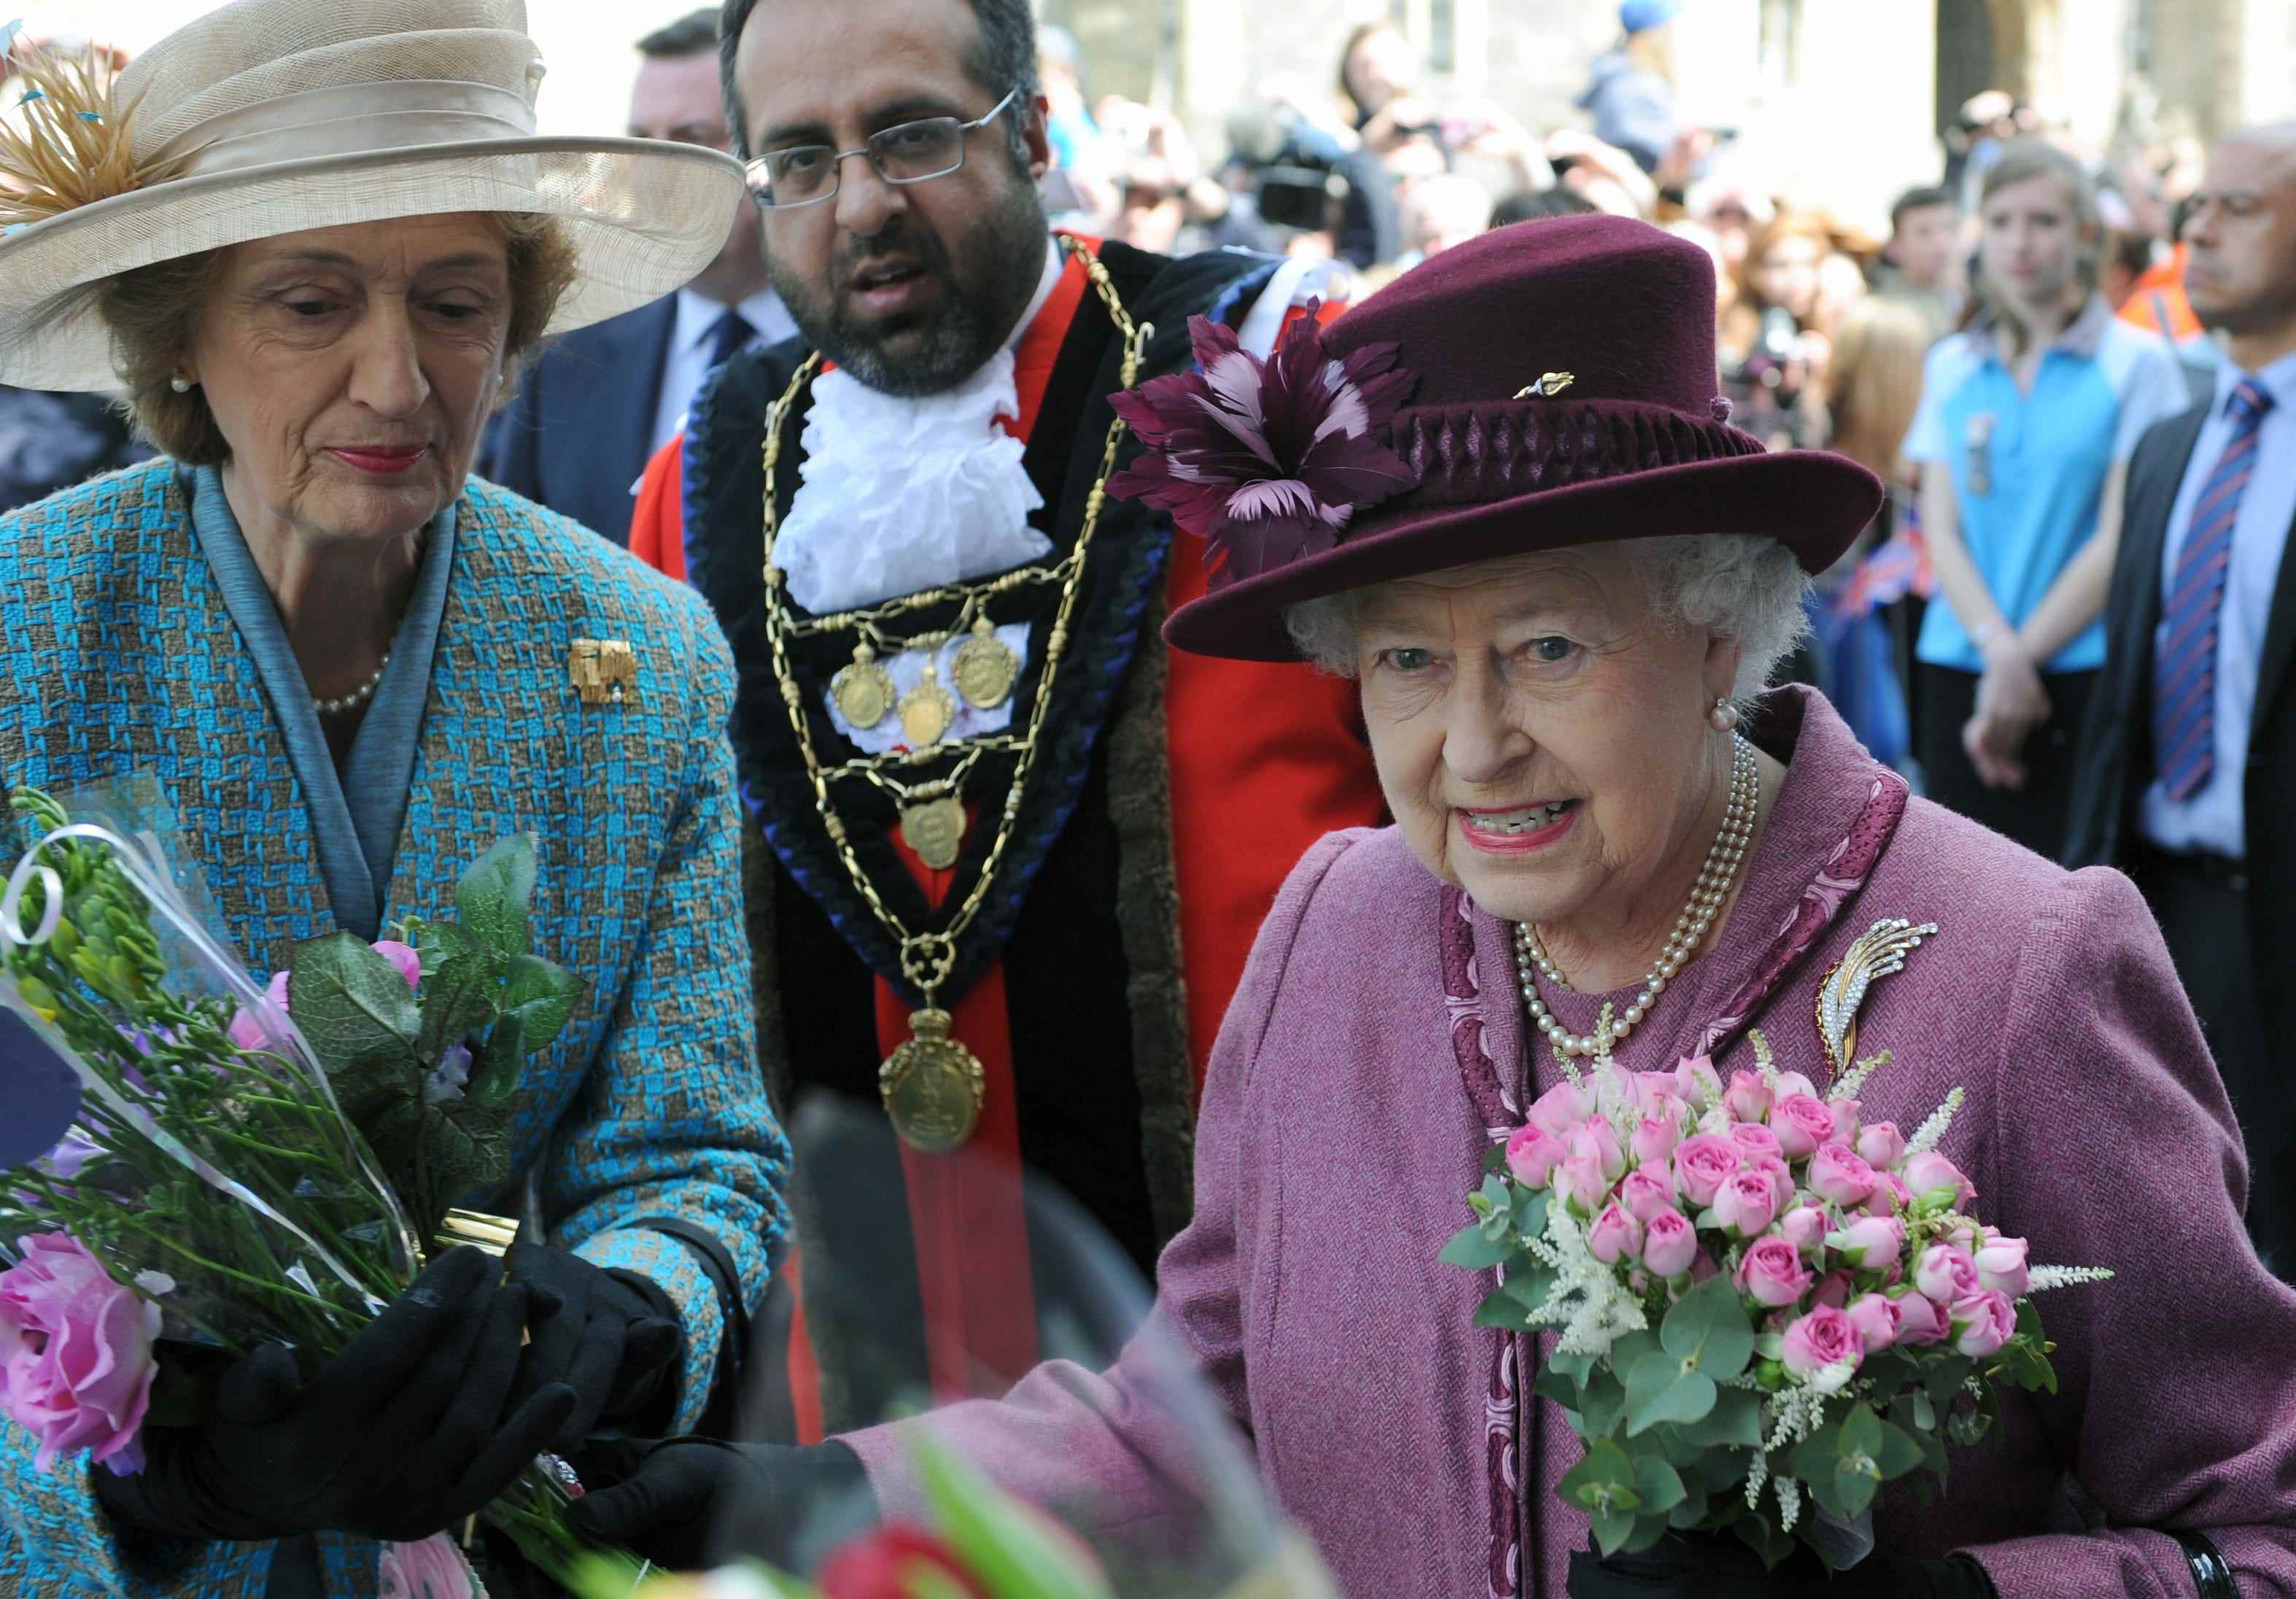 Königin Elizabeth II. unternimmt in Begleitung ihrer Hofdame Lady Susan Hussey einen Rundgang anlässlich ihres diamantenen Thronjubiläums am 30. April 2012.